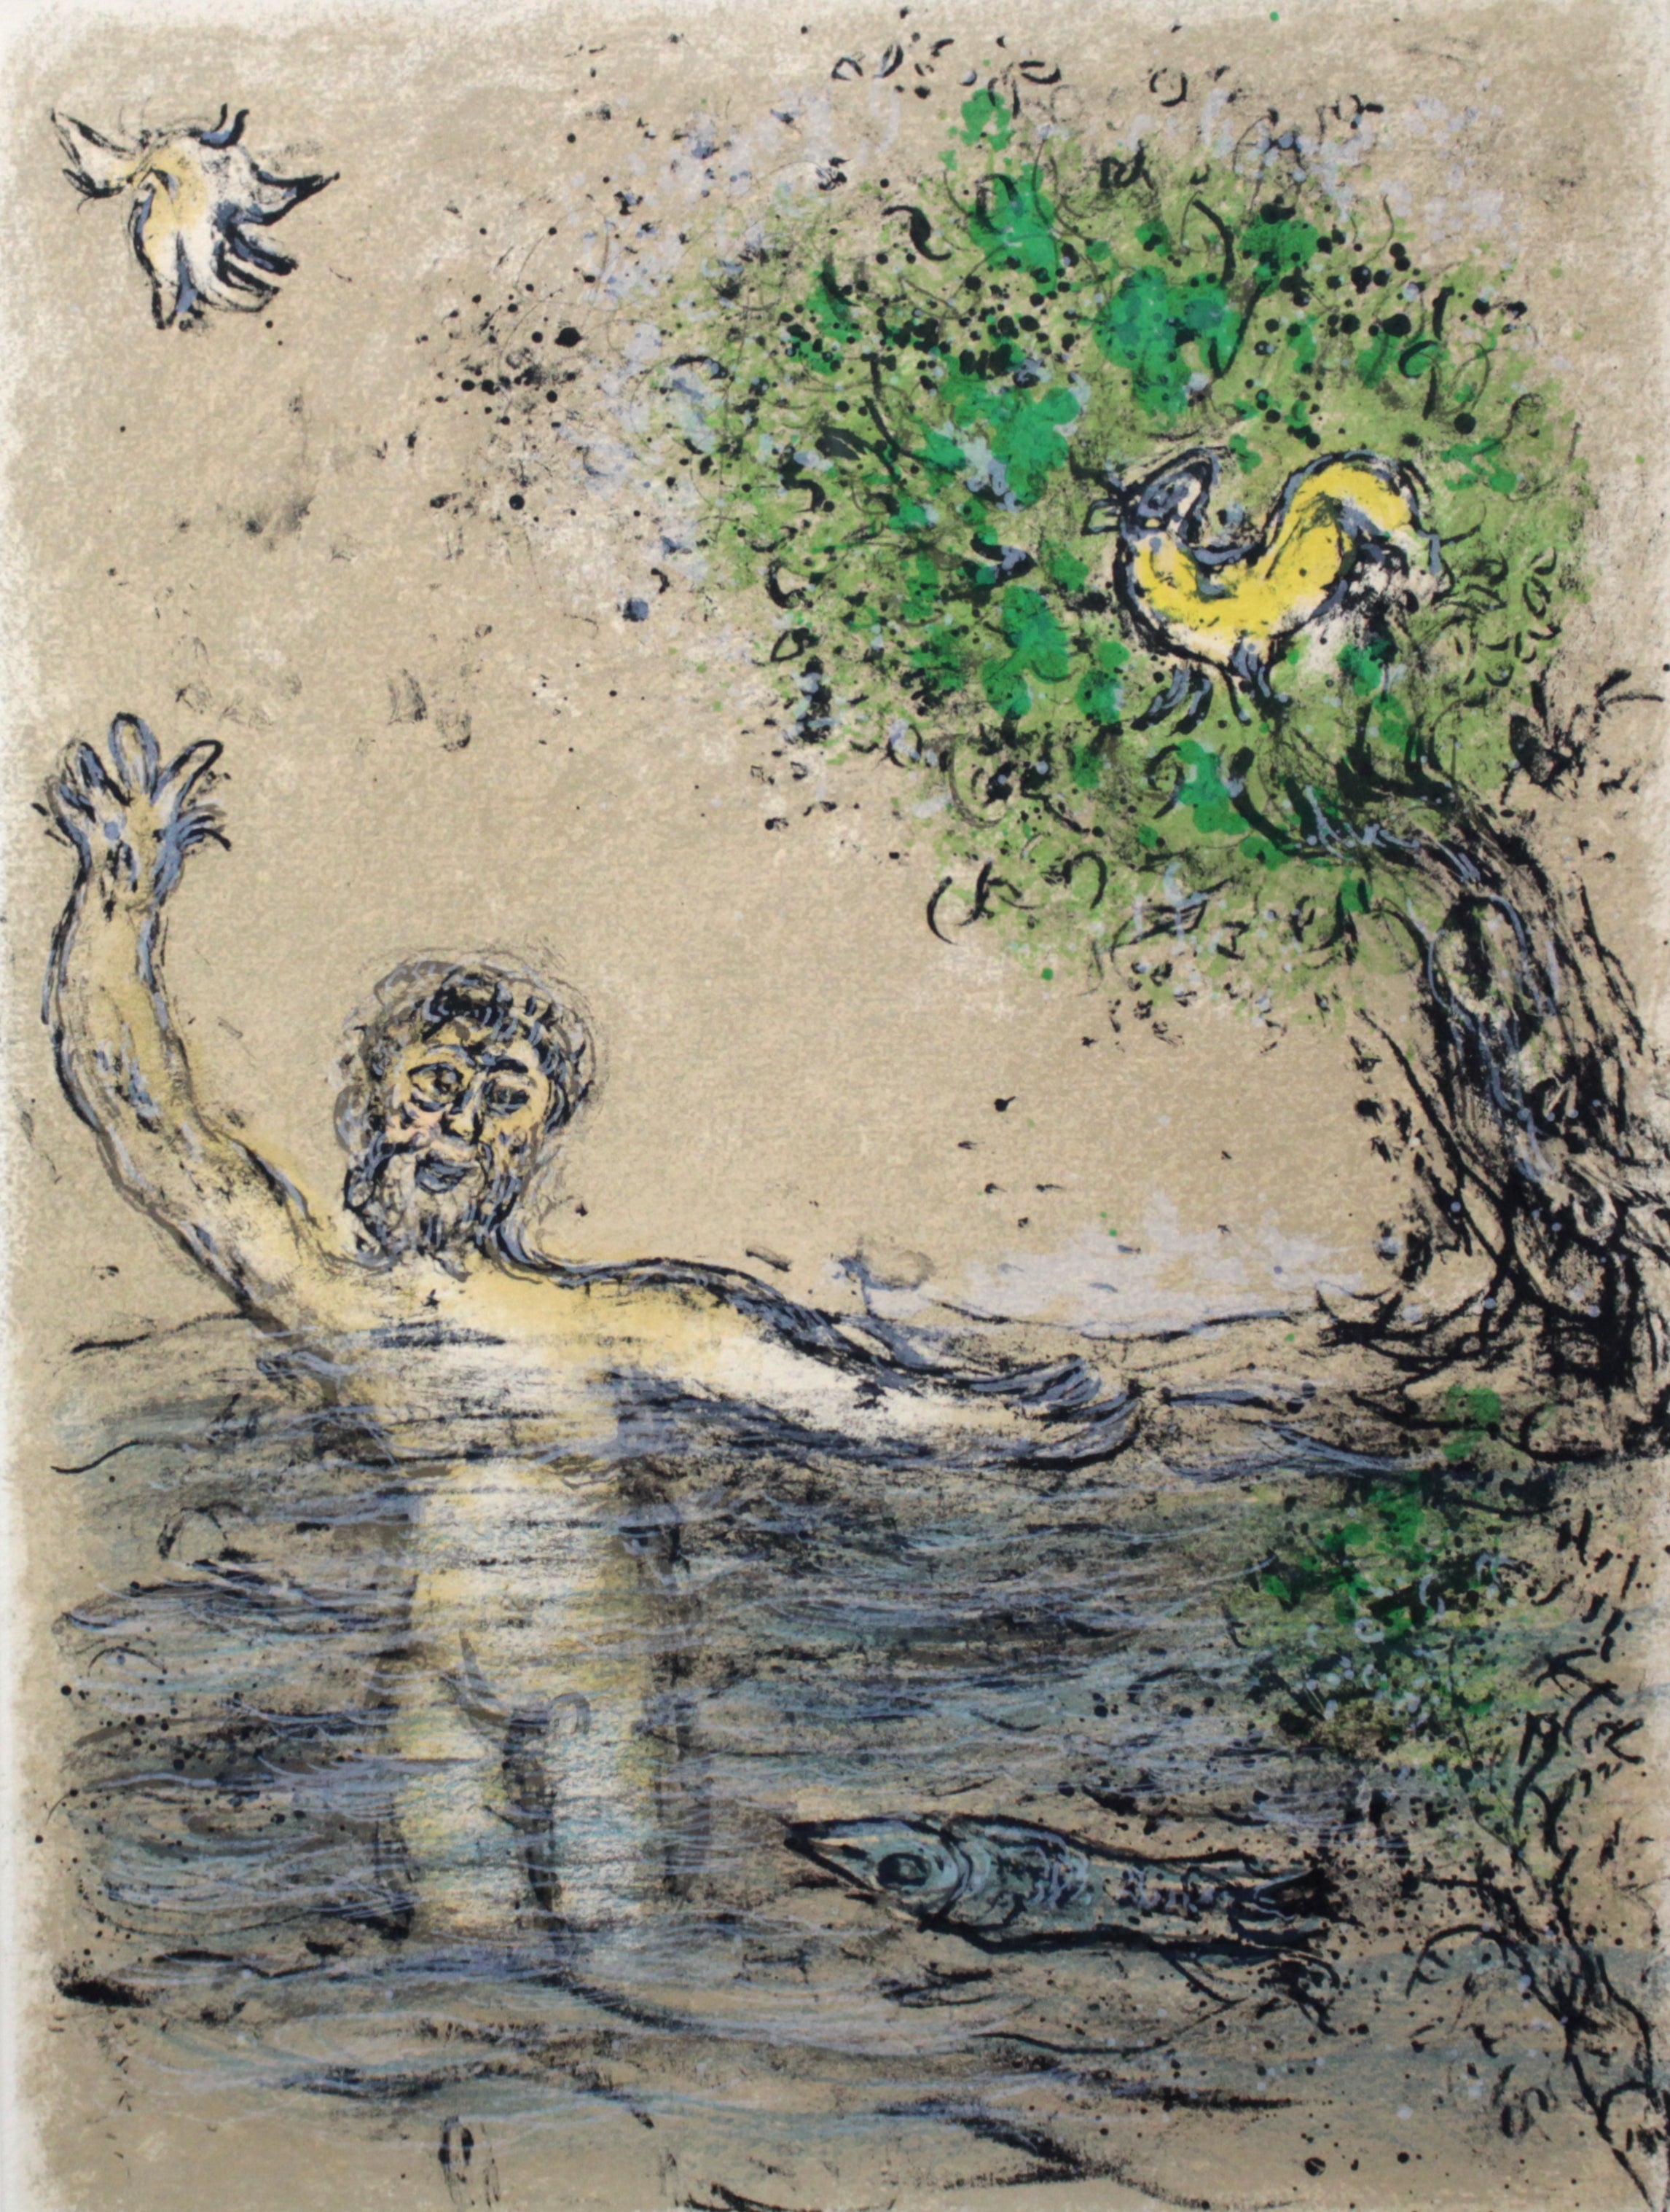 マルク・シャガール『暴風にあって波にのまれるオディッセウス』 – 北海道画廊